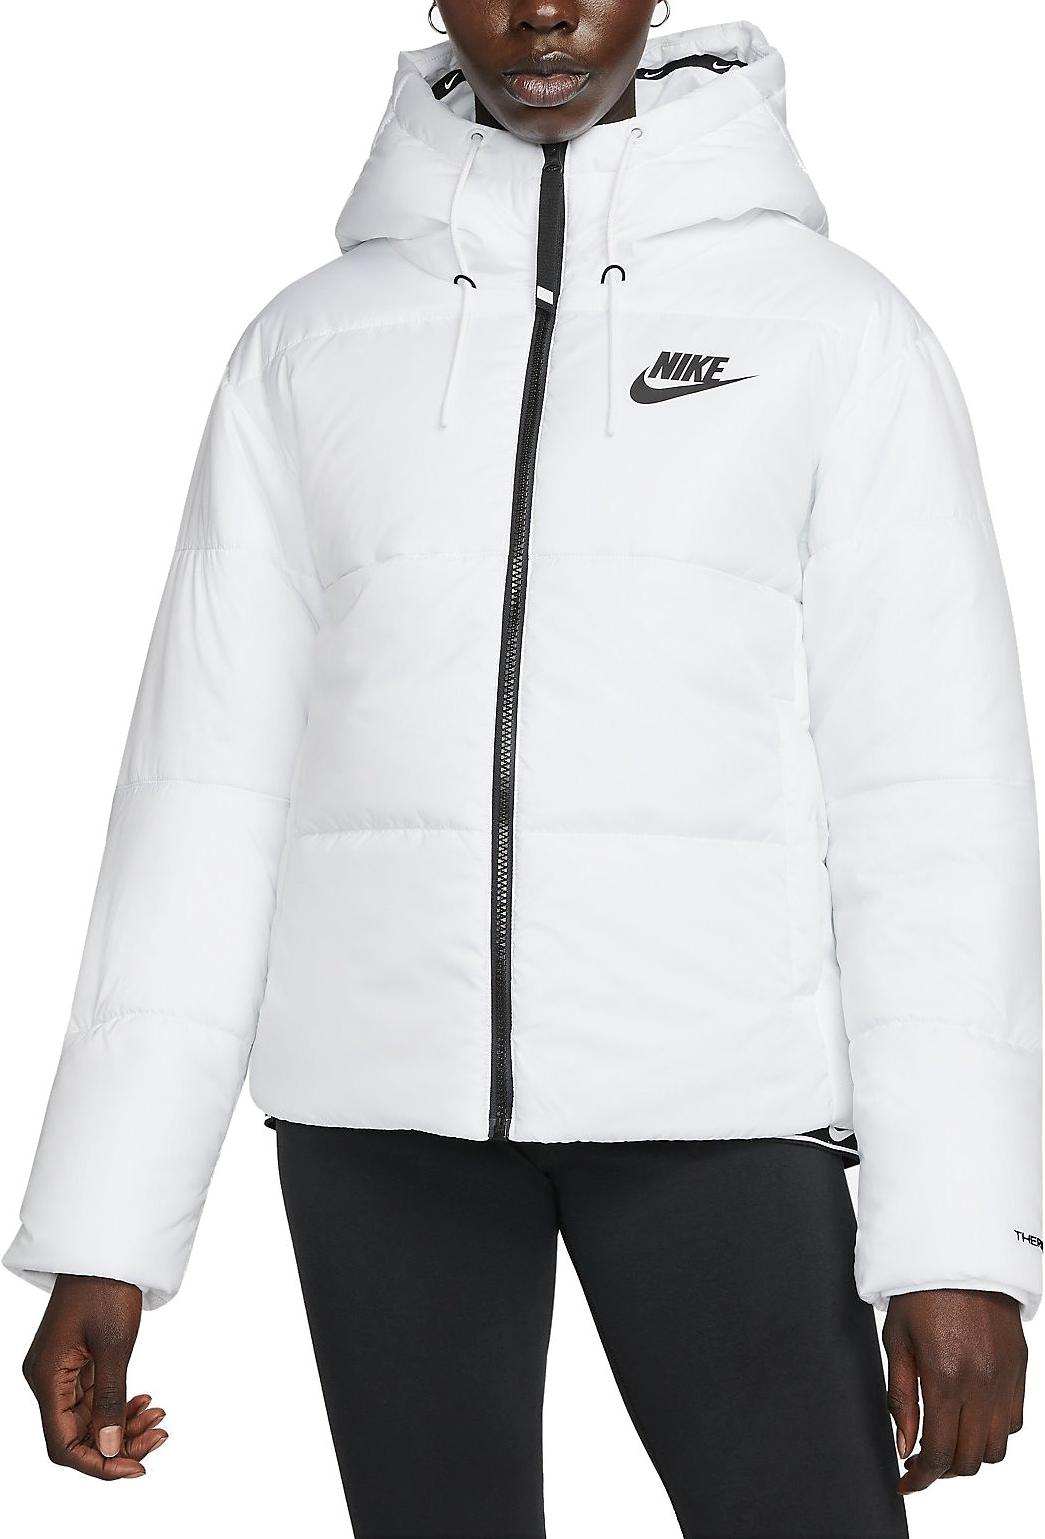 Hooded Repel Sportswear Women Therma-FIT Jacket Nike s